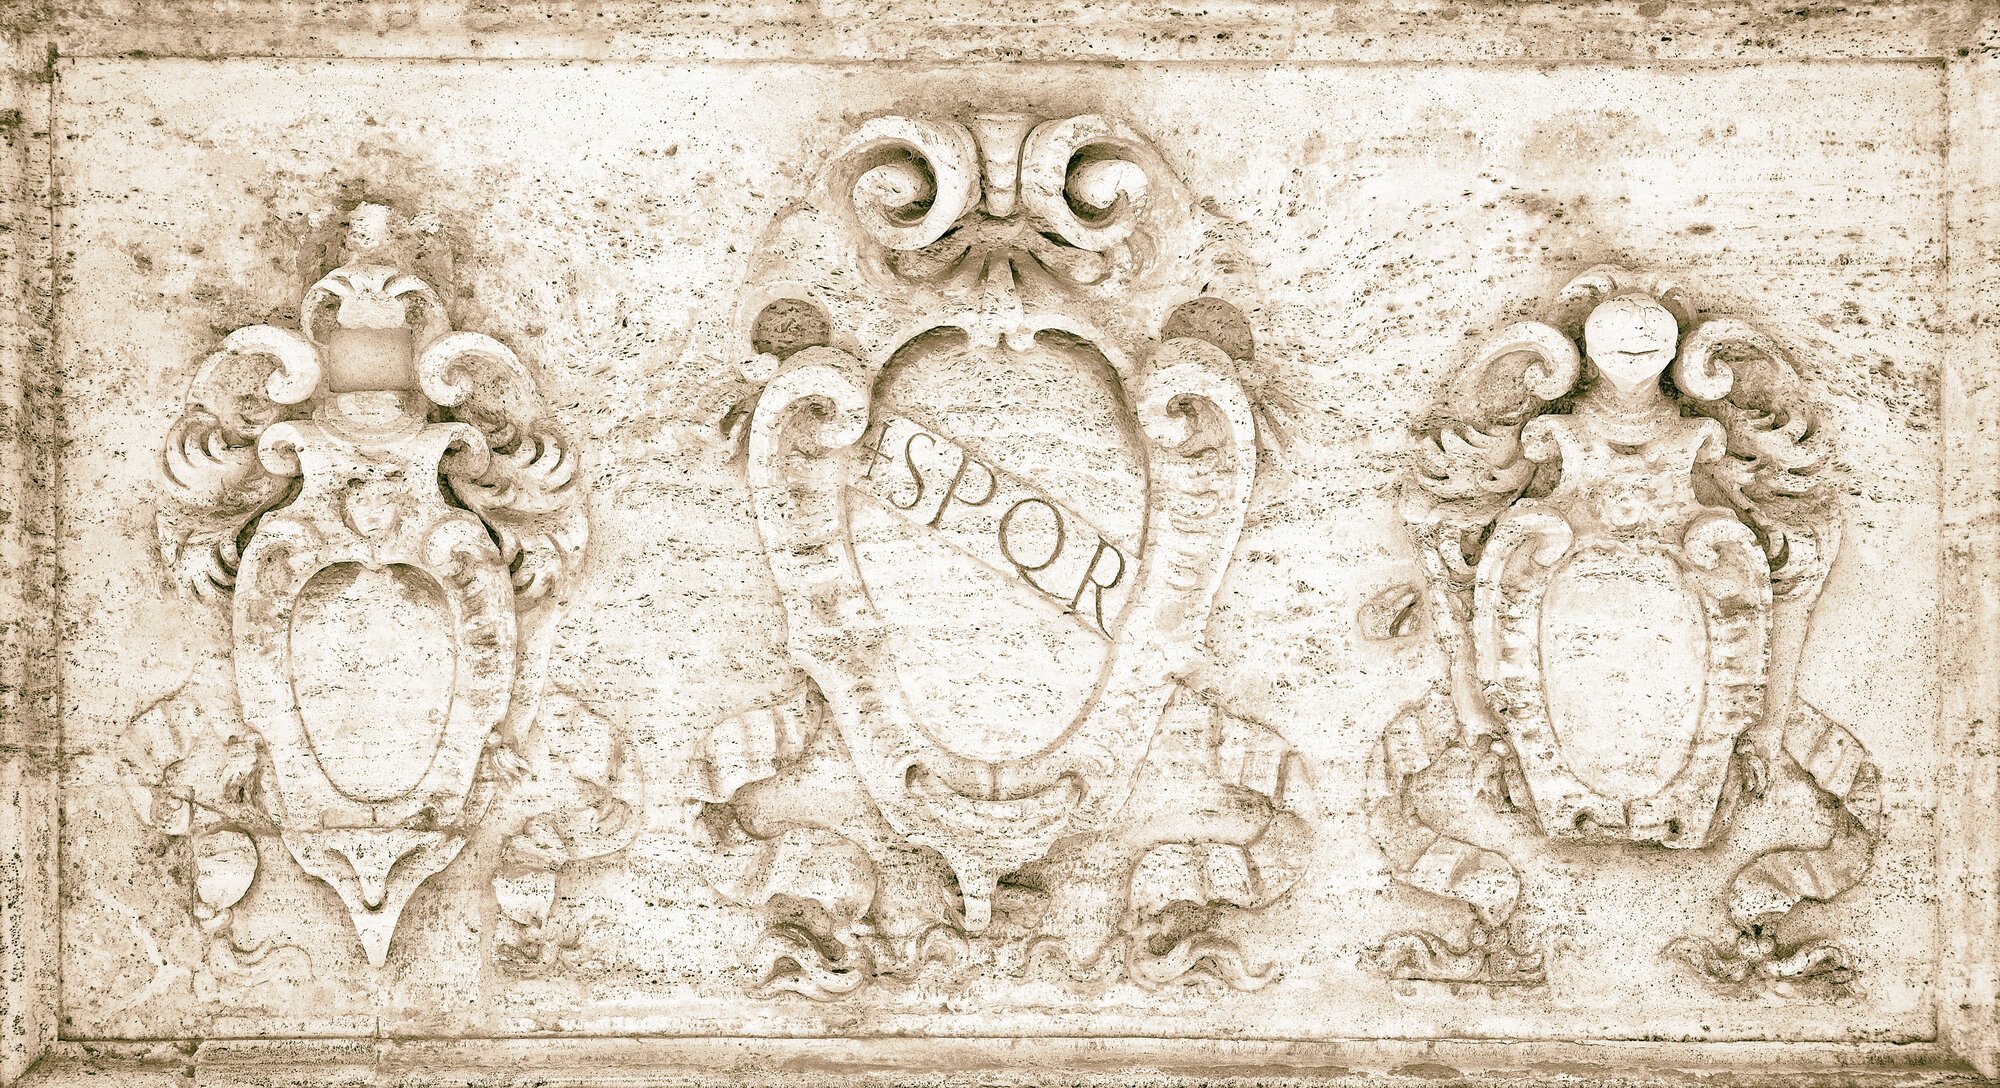 Símbolo de la República del Senado Romano - spqr.jpg